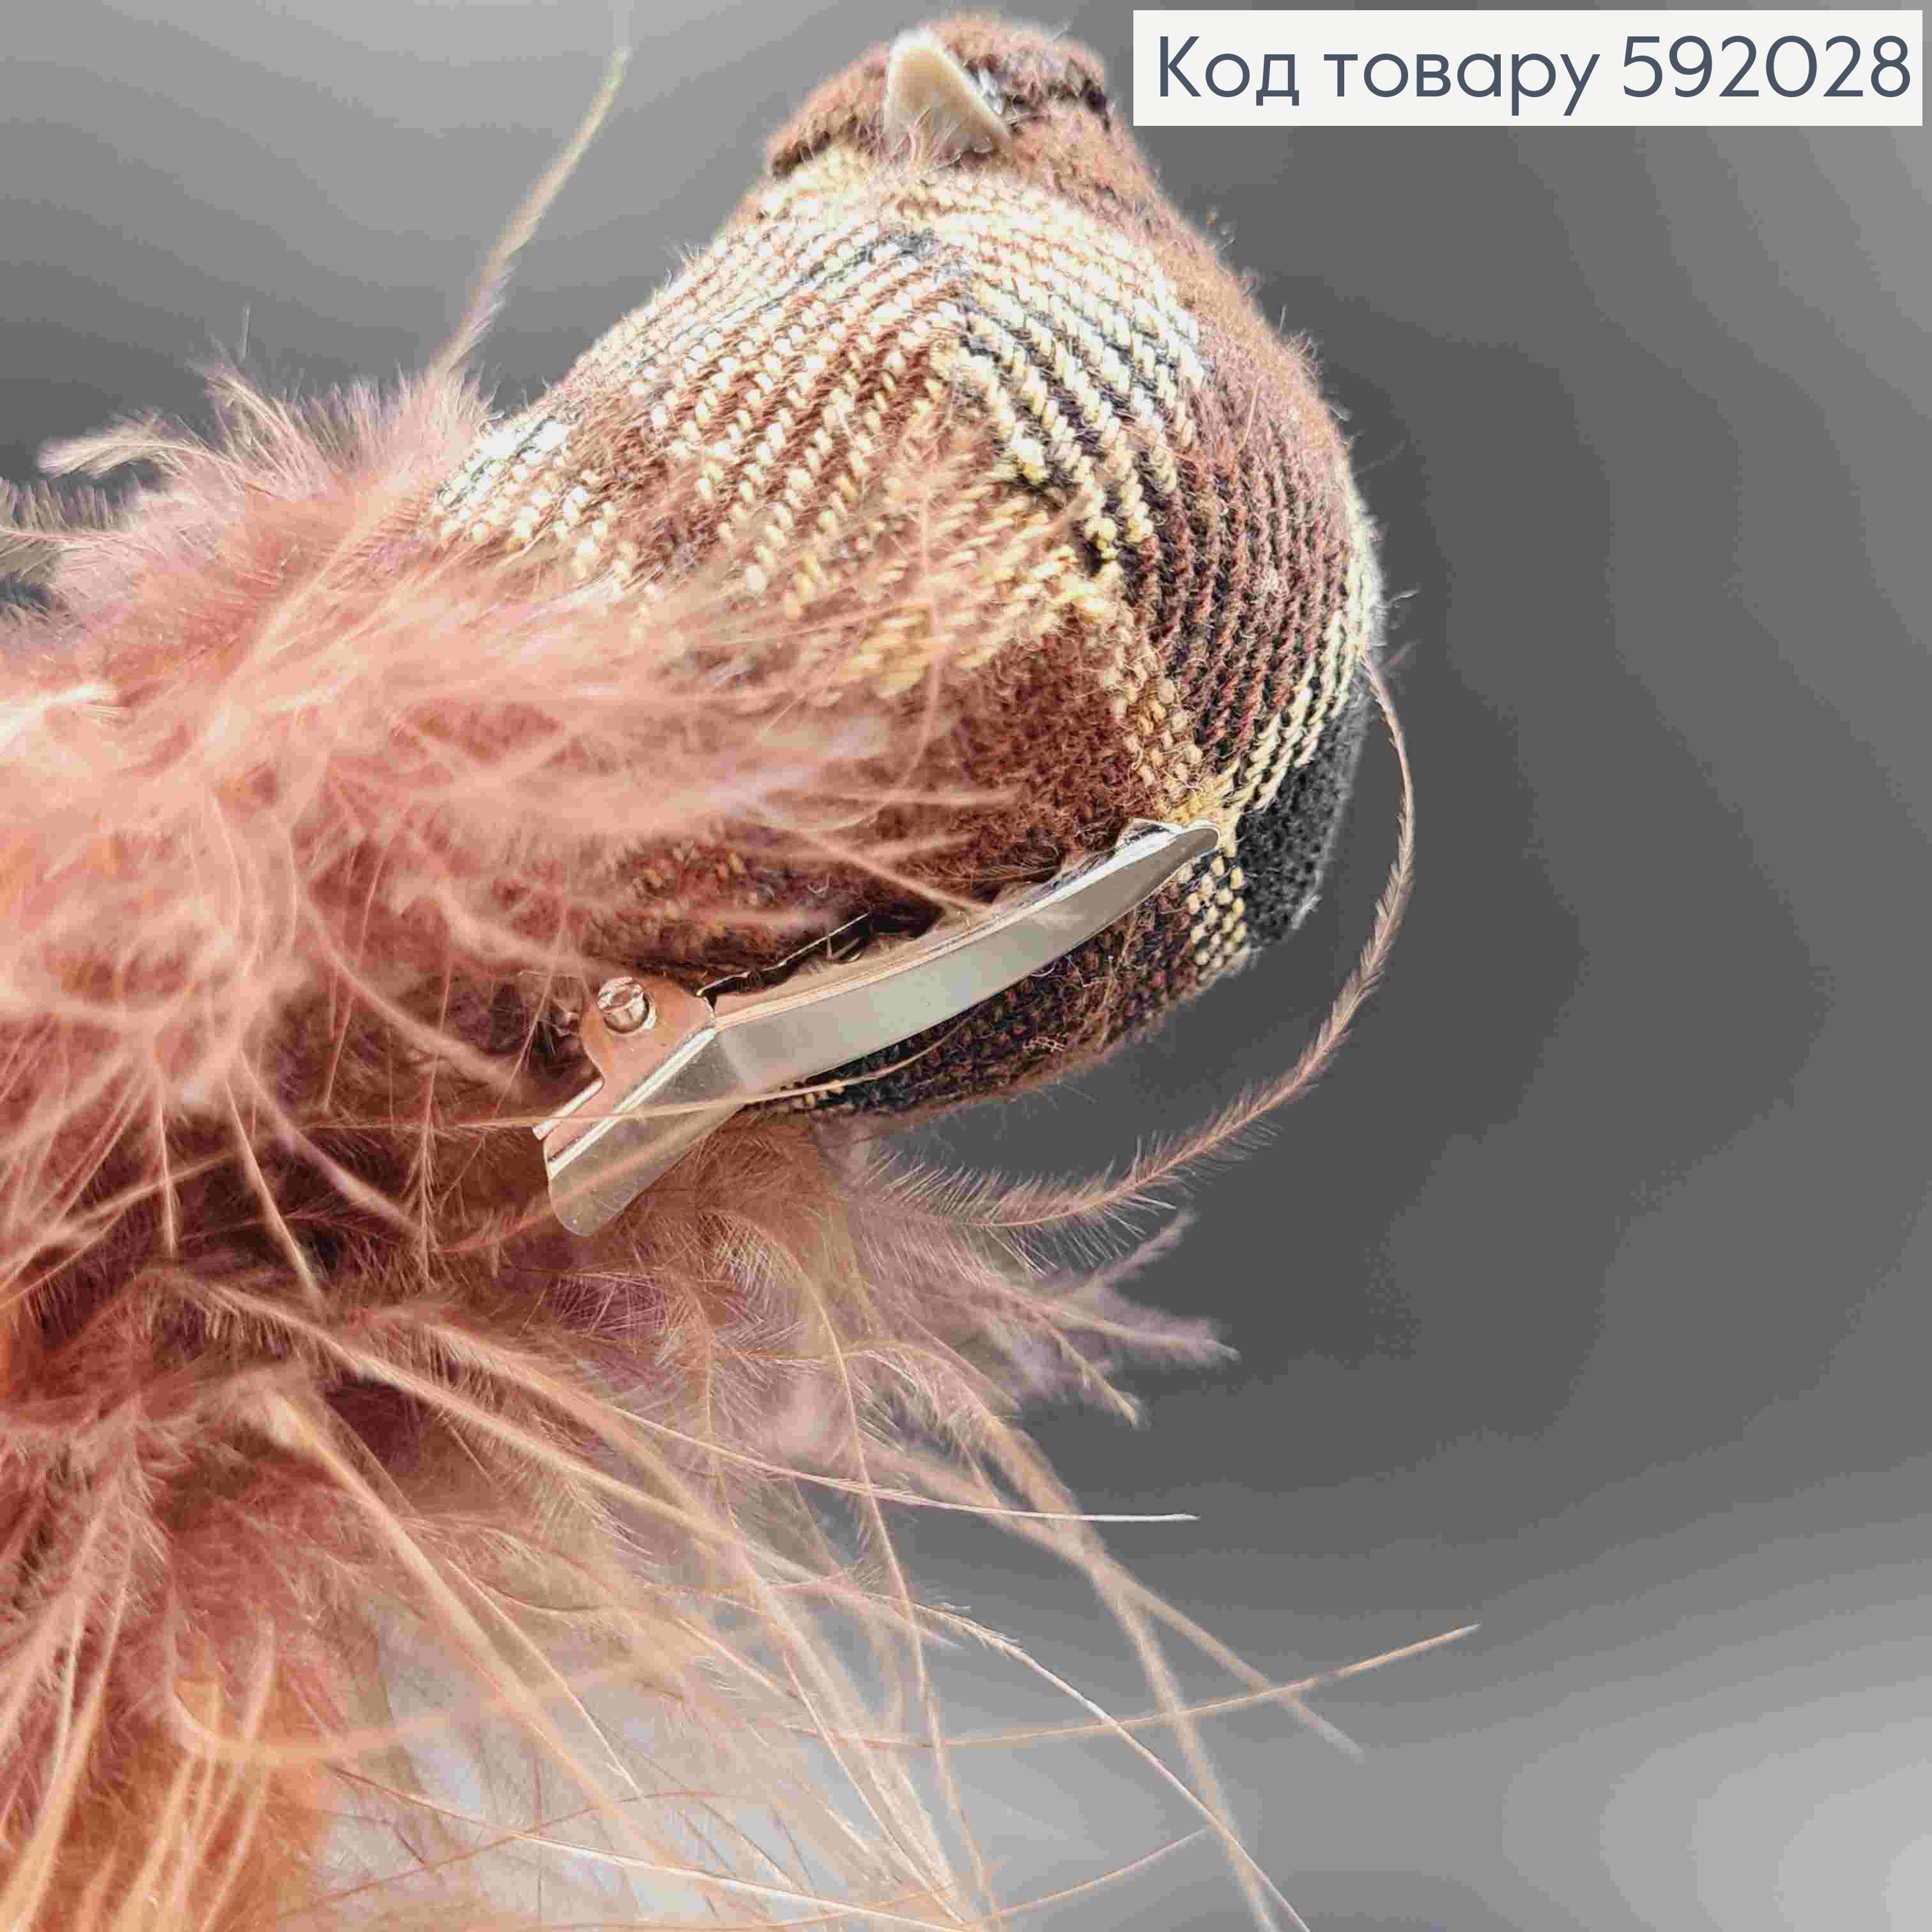 Флористическая заколка, 13см, ГОРОБЧИК из ткани в клетку, с хвостиком из перышка, Польша 592028 фото 2